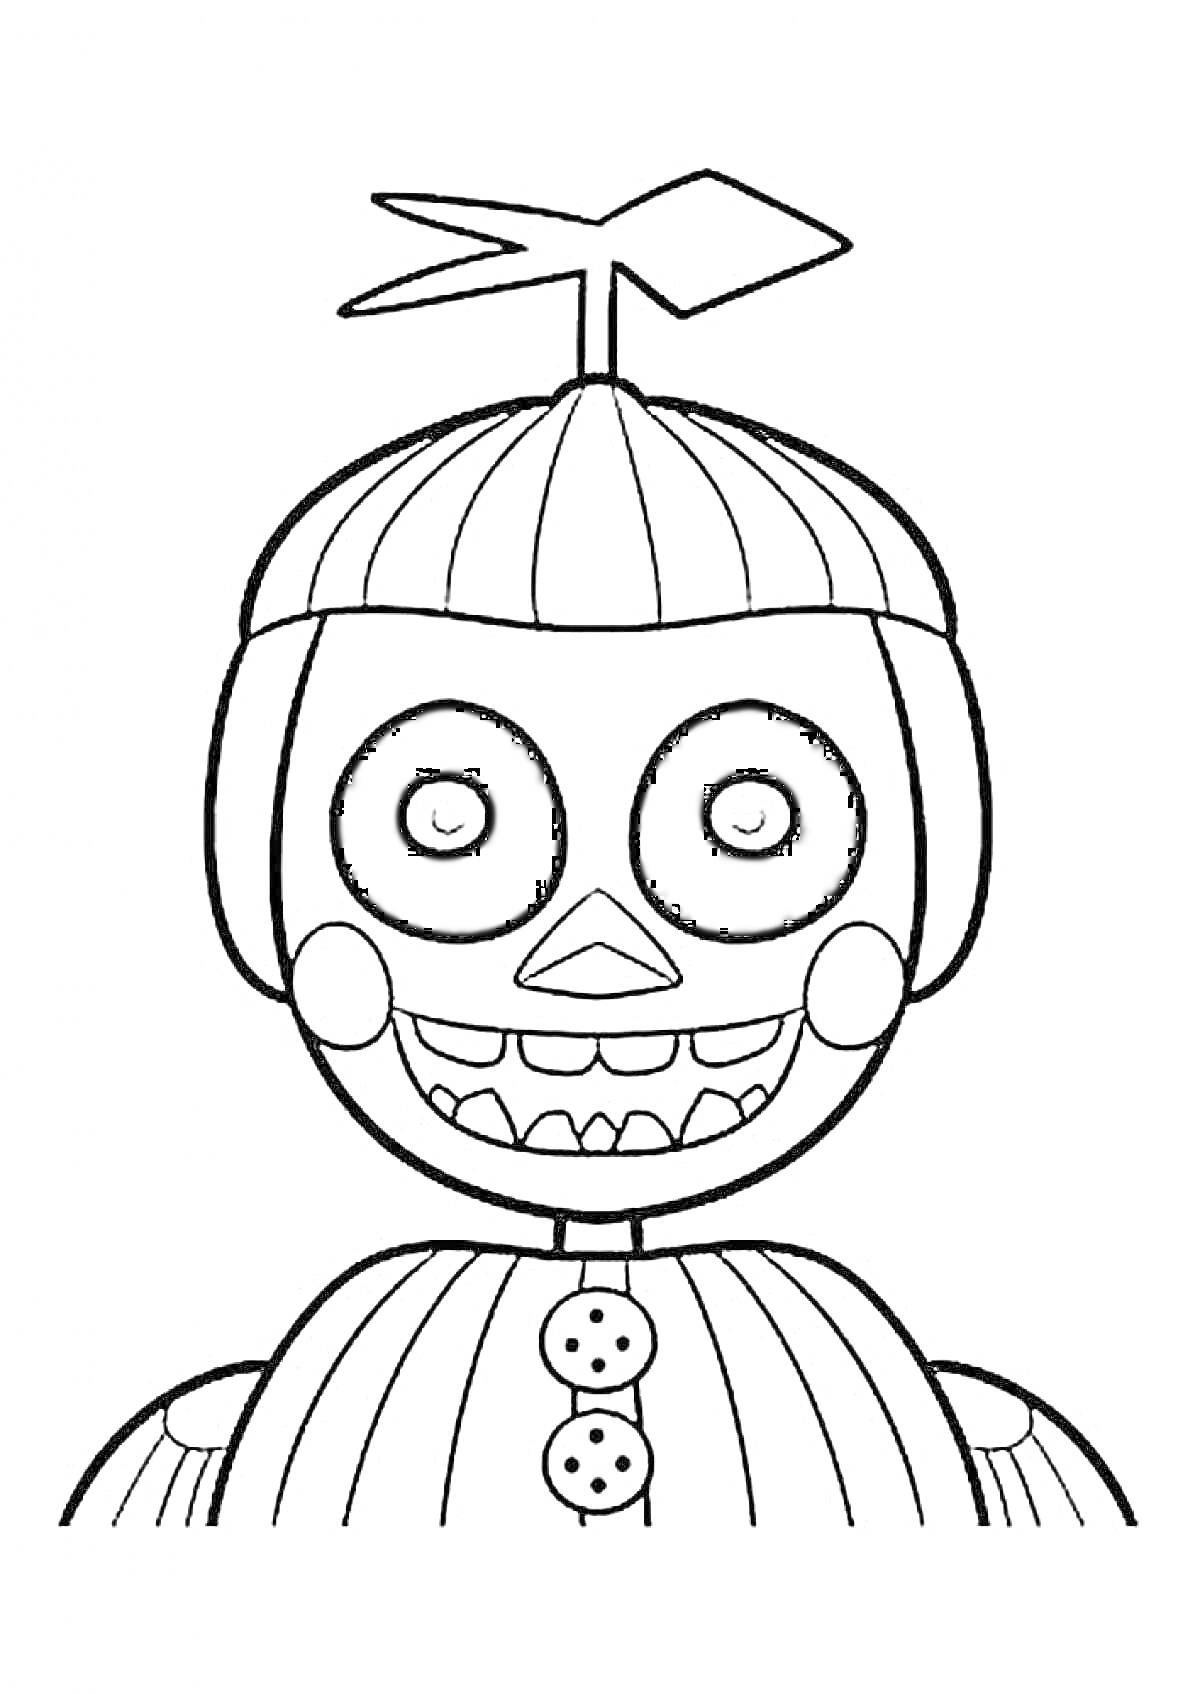 Раскраска Аниматроник с пропеллером на голове, круглые глаза, зубастая улыбка, два крупных пуговицы на груди